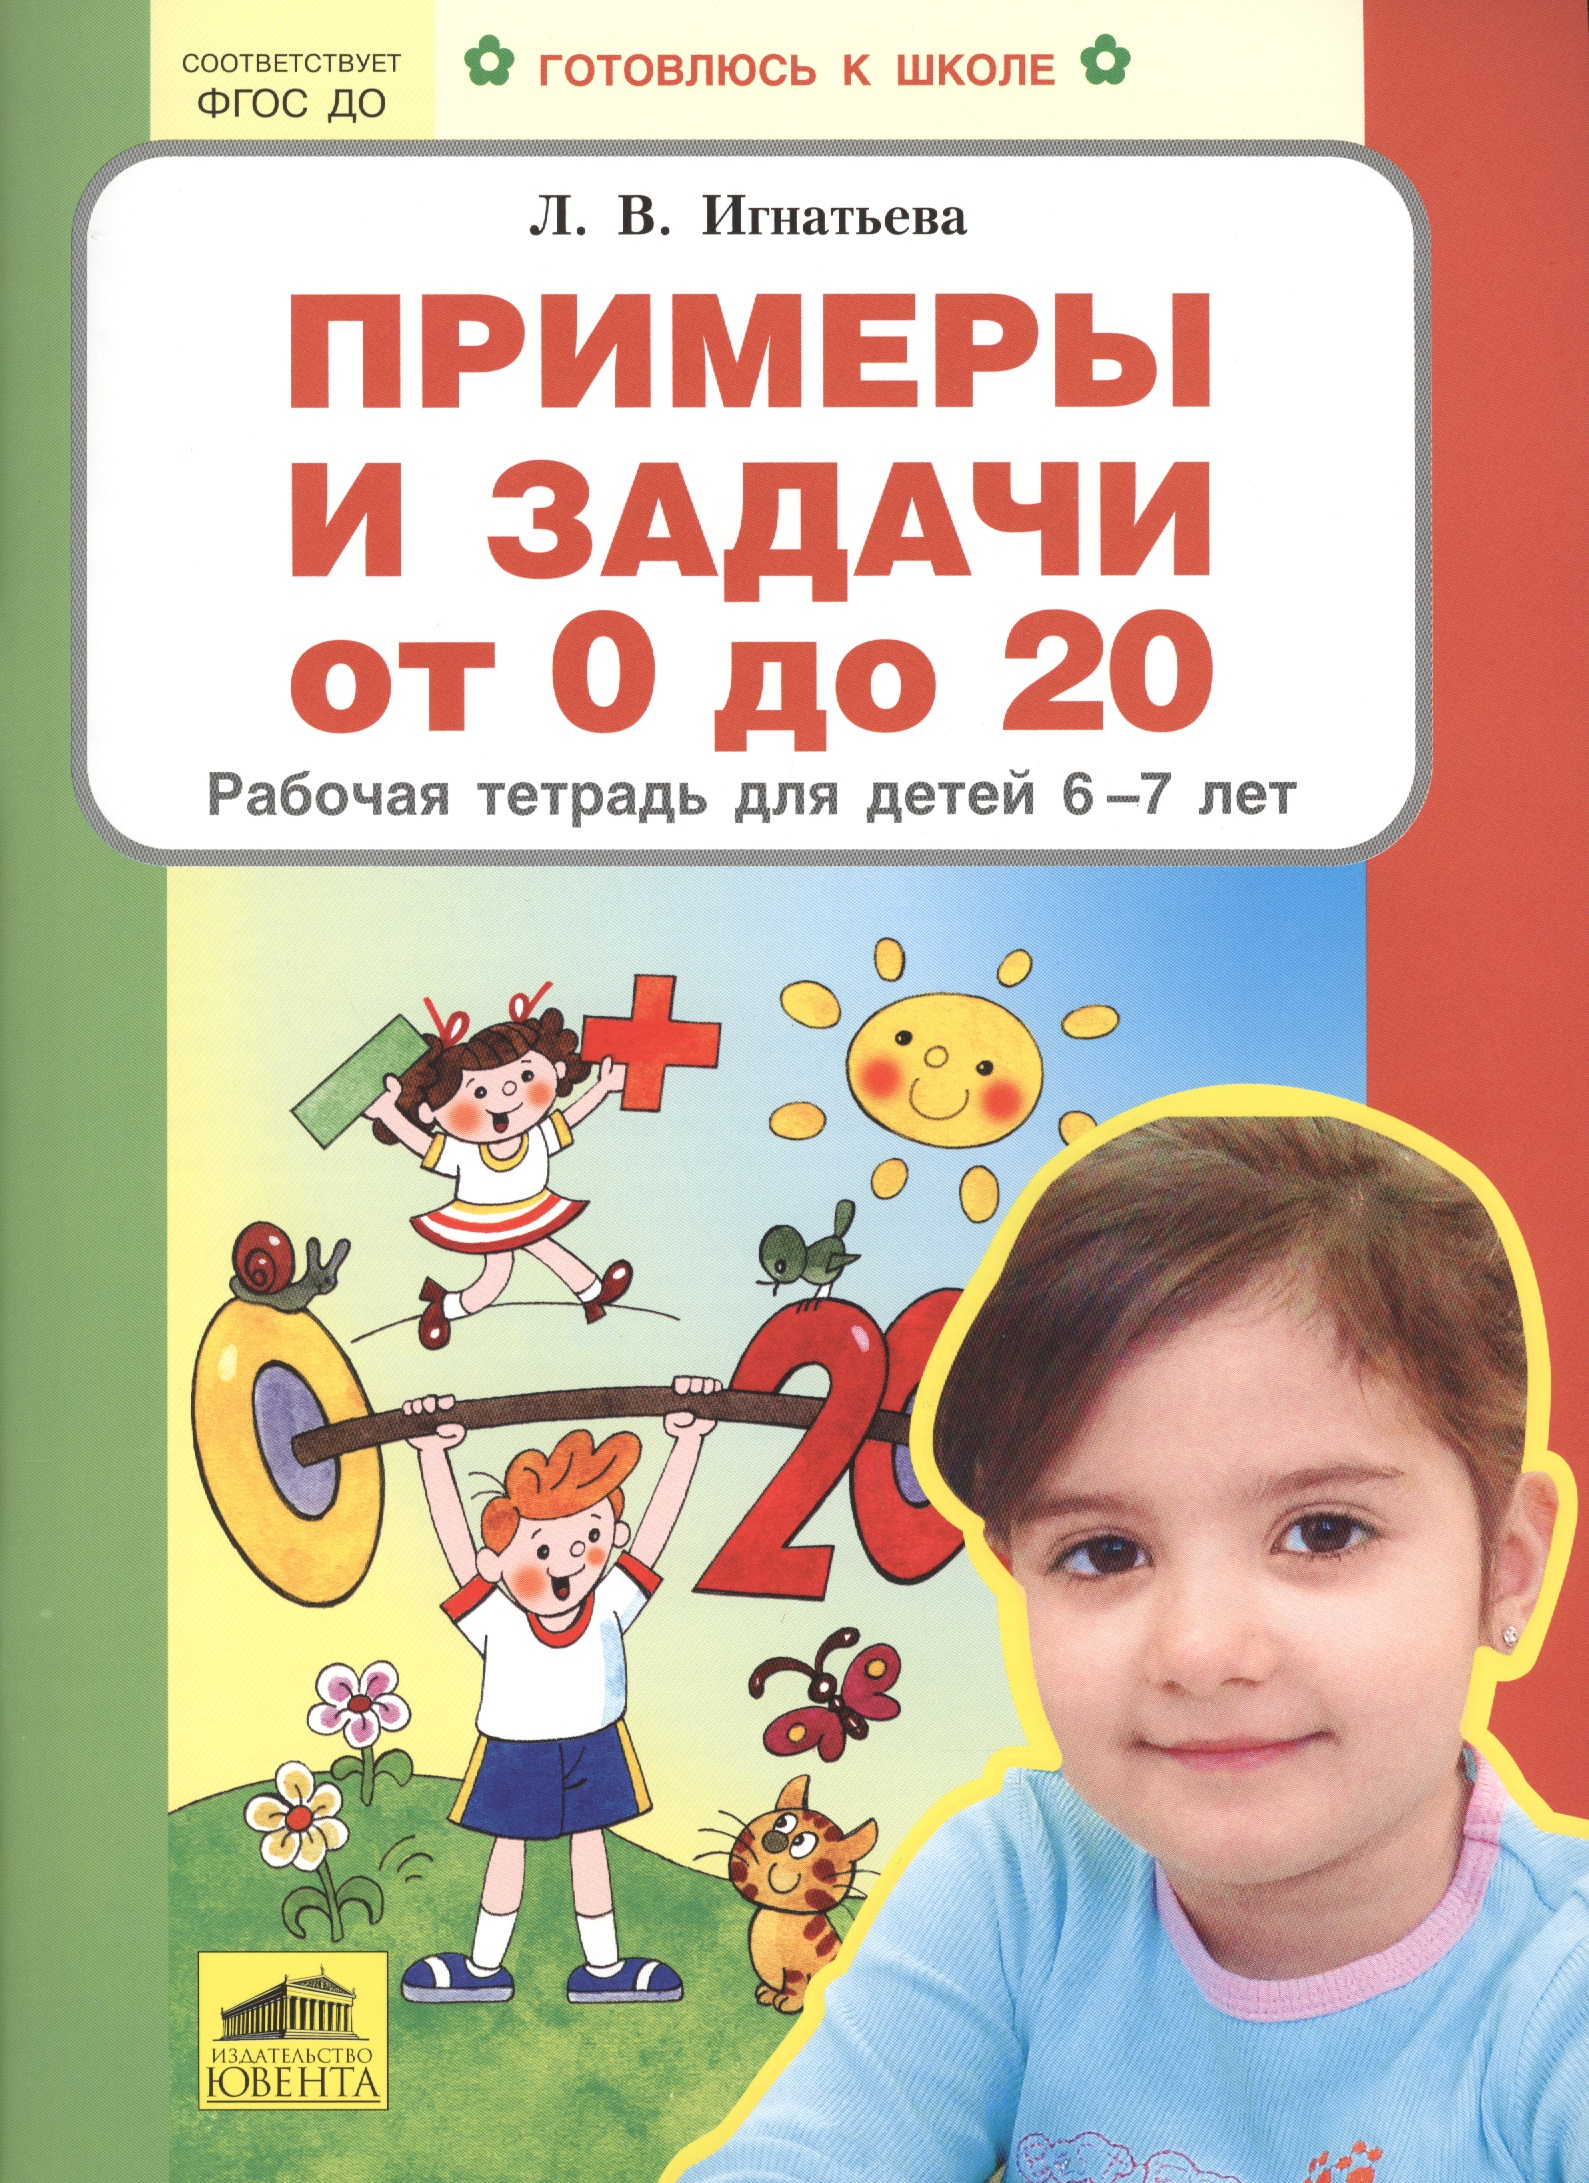 Примеры и задачи от 0 до 20 Р/т для детей (6-7) (мГкШ) Игнатьева (ФГОС ДО) примеры от 0 до 100